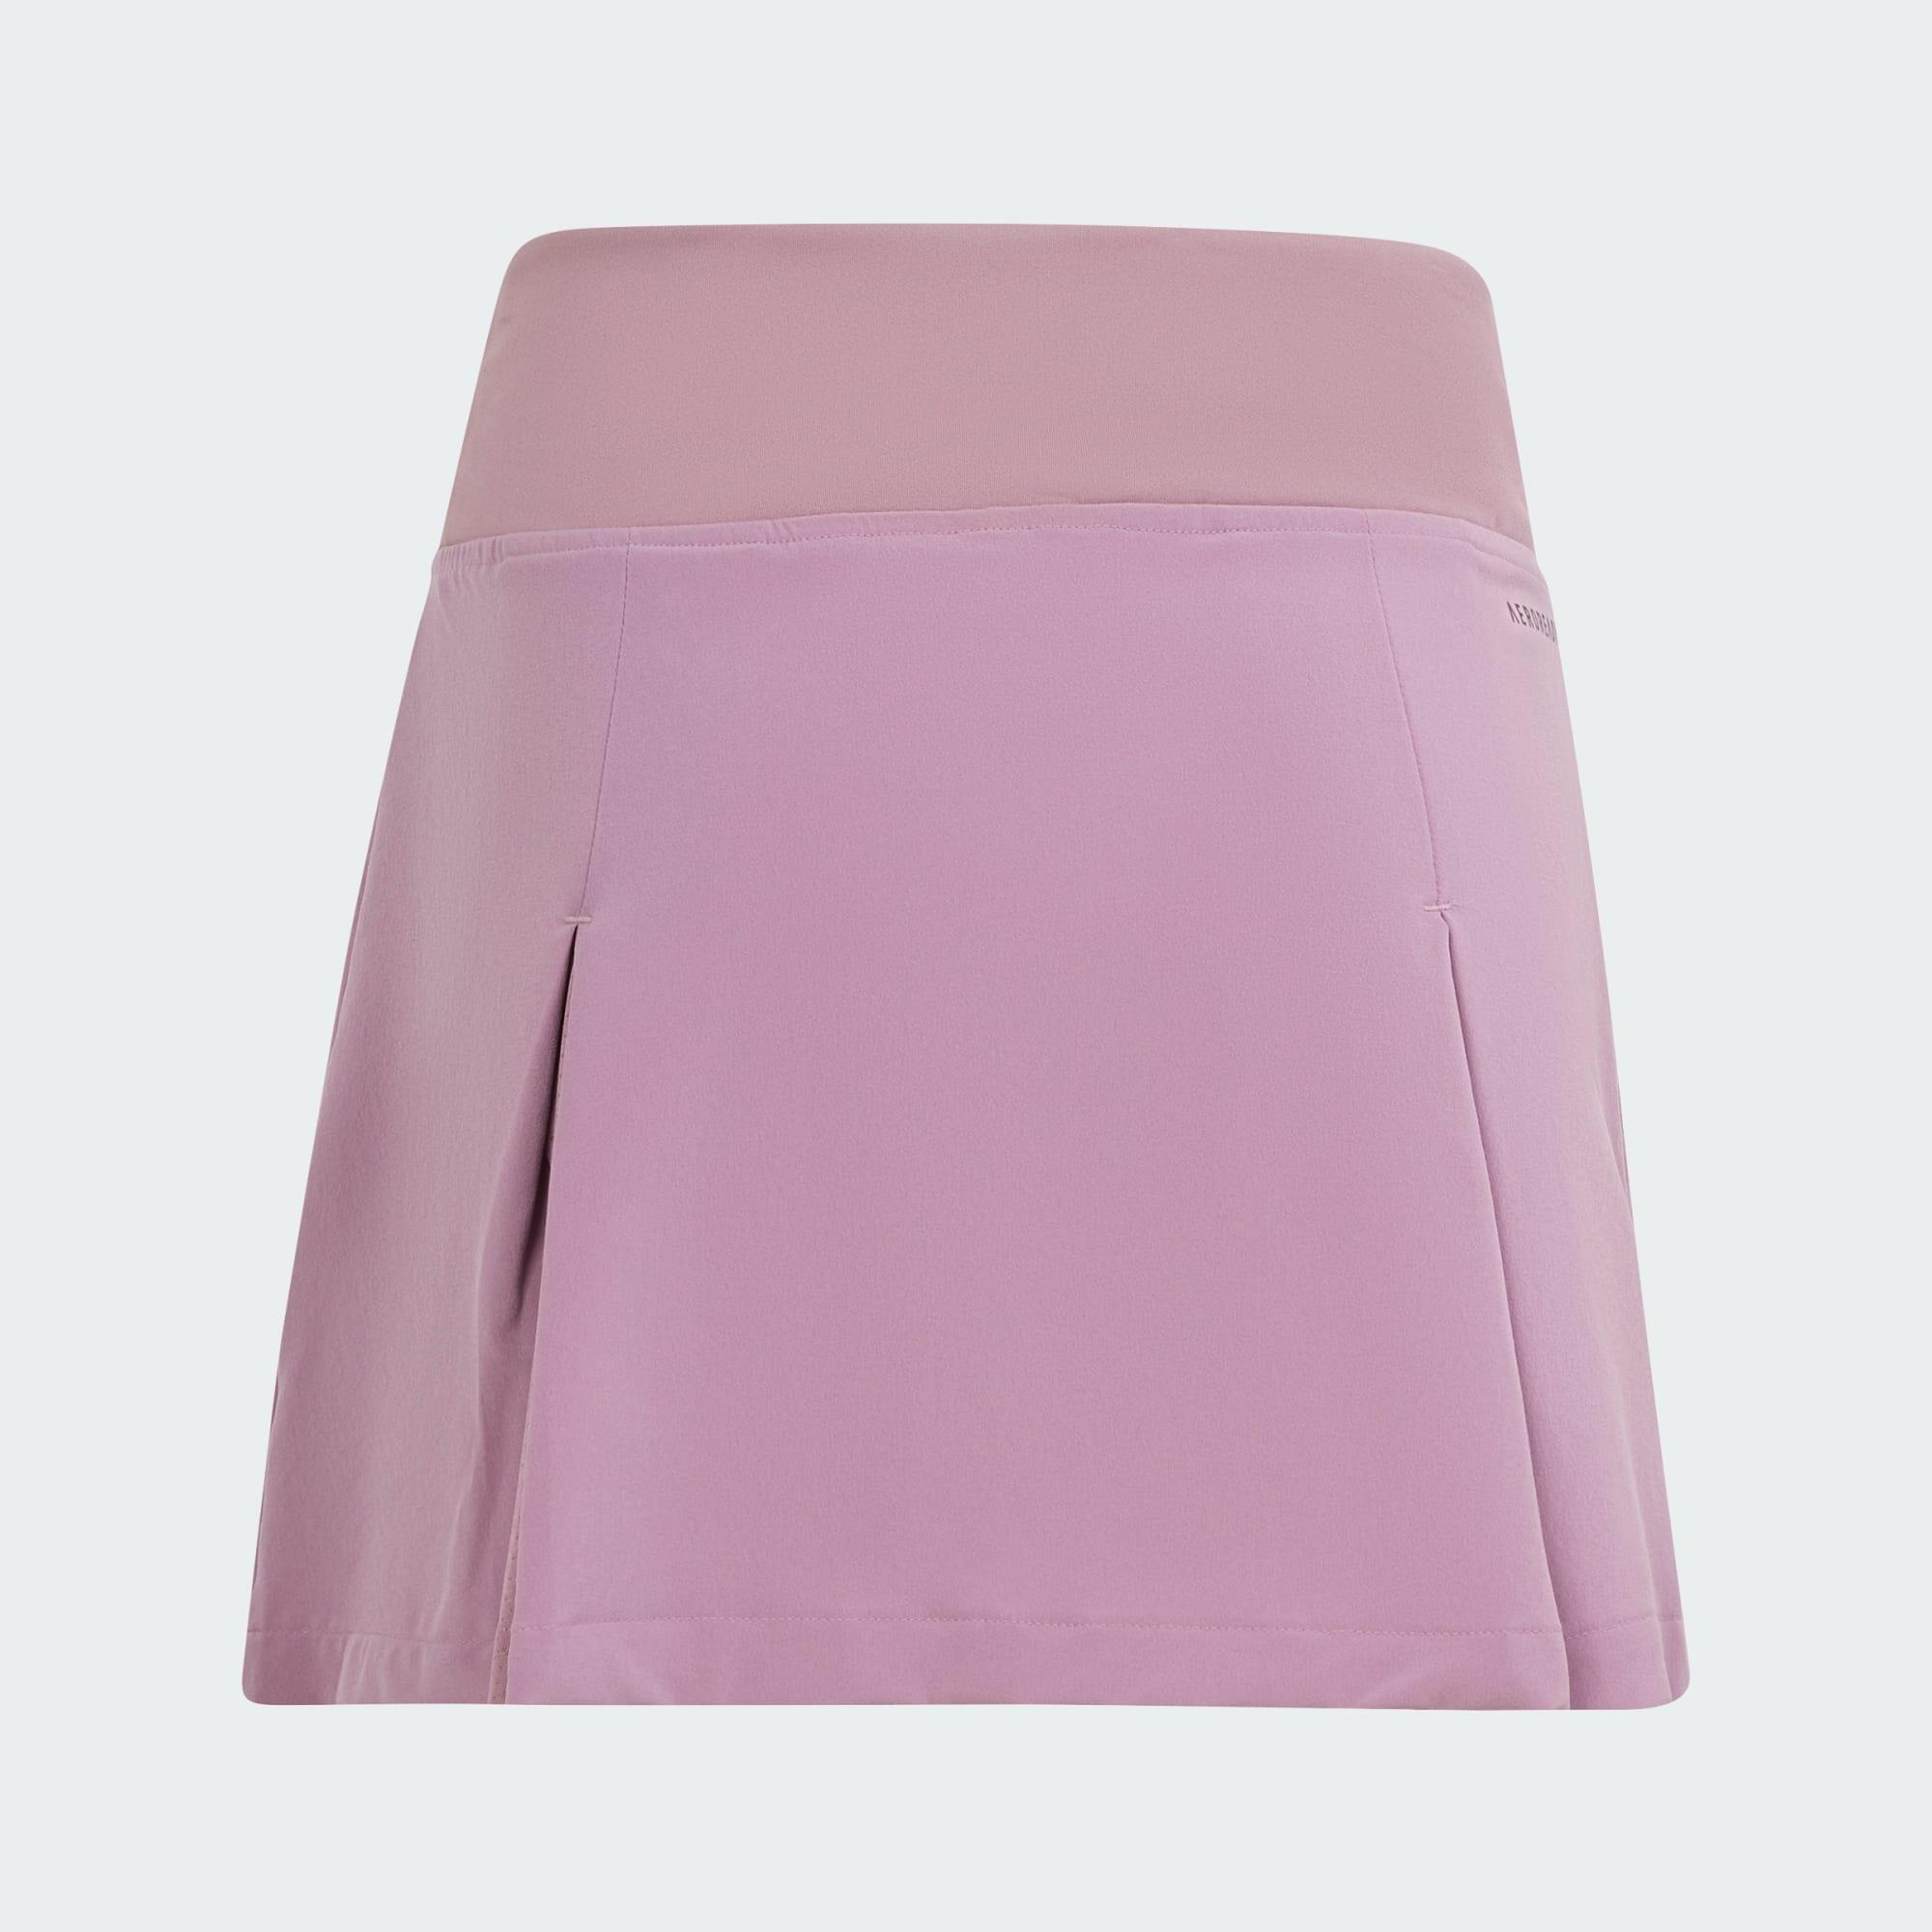 Club Tennis Pleated Skirt 4/5